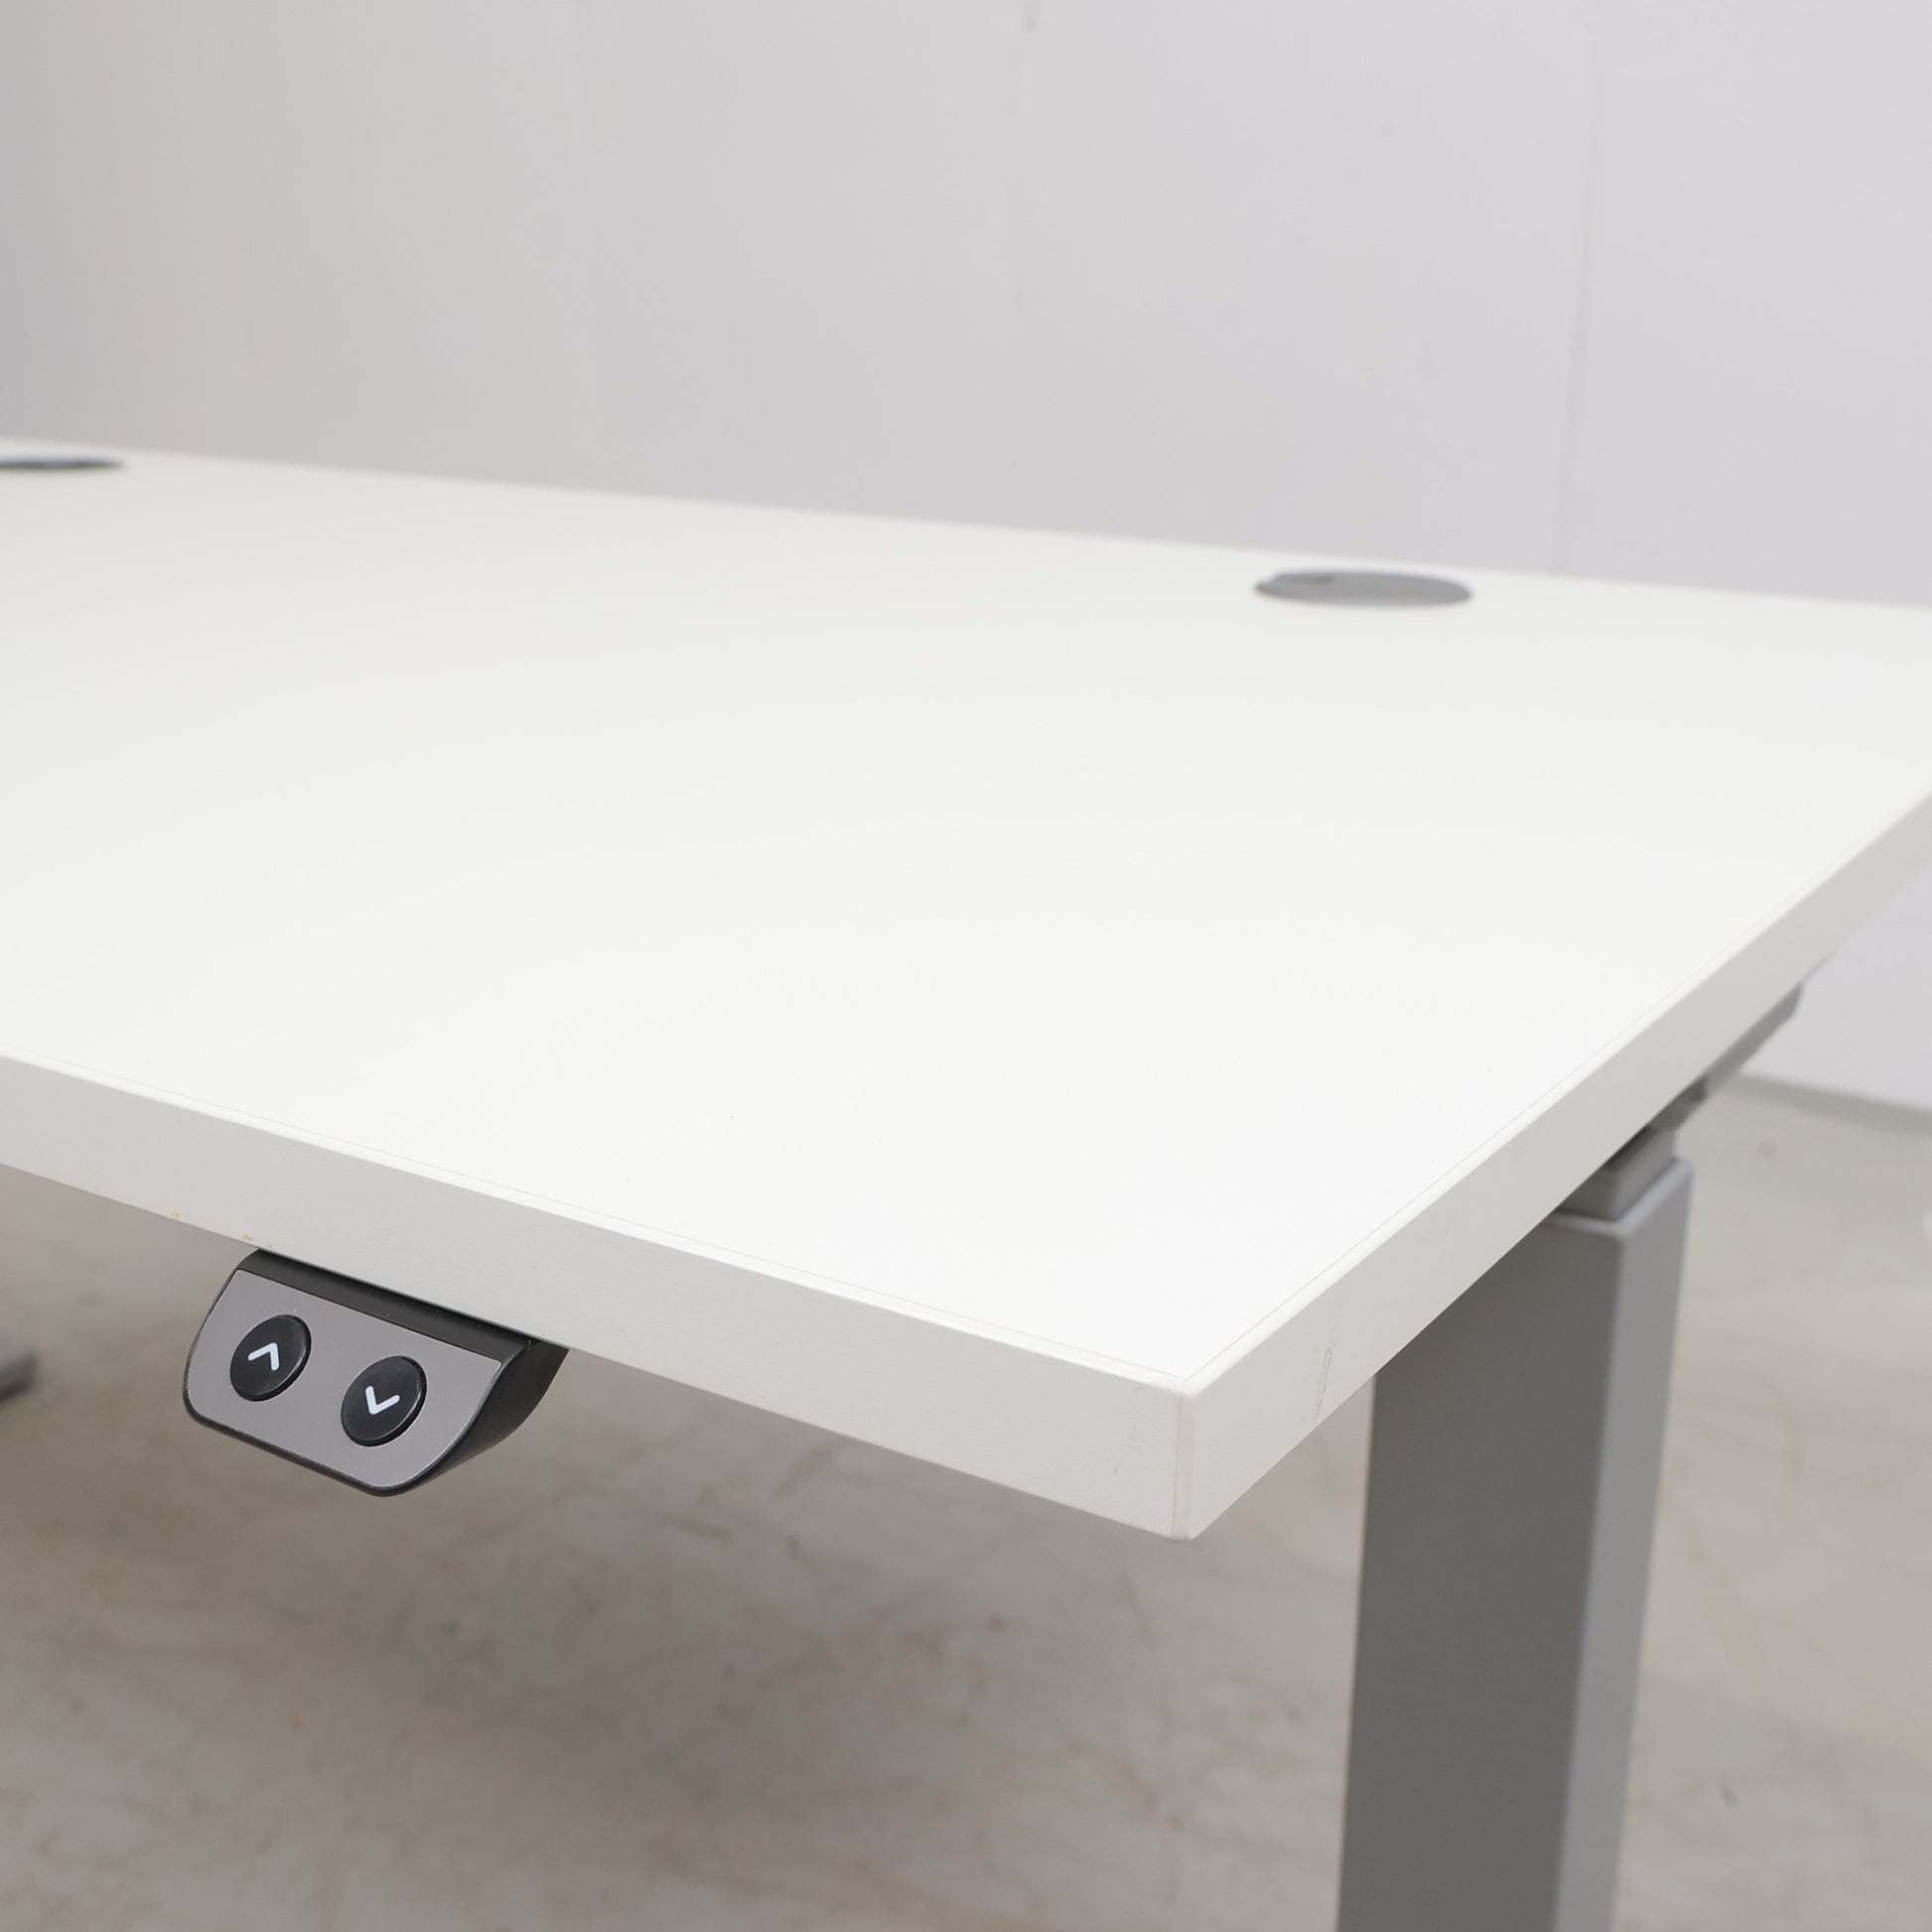 Kvalitetssikret | Svenheim elektrisk hev/senk bord fra 2021, 140×80 - Secundo